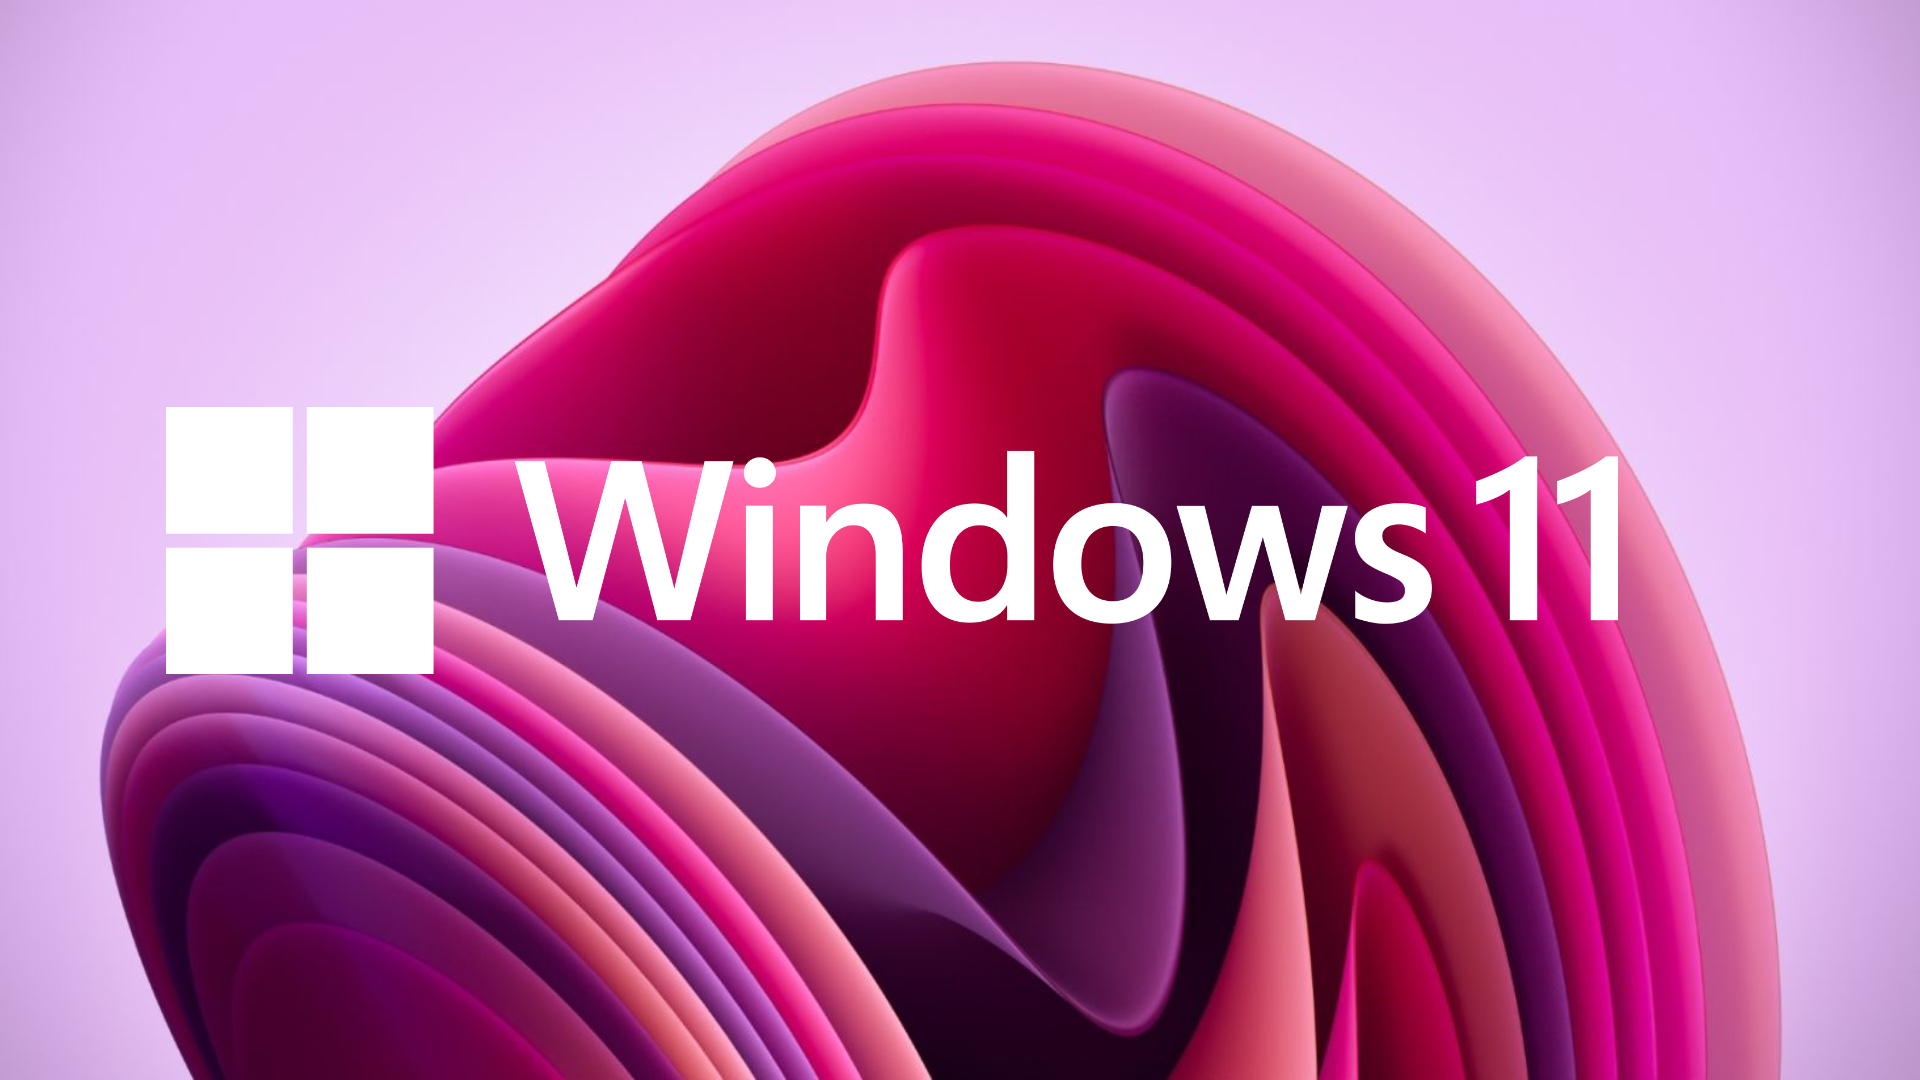 Windows 11 là hệ điều hành mới nhất được Microsoft giới thiệu. Đánh giá Windows 11 chính là cách tuyệt vời để bạn hiểu rõ hơn về những tính năng mới của hệ điều hành này. Nếu bạn là người yêu công nghệ, đừng bỏ qua bài viết này.